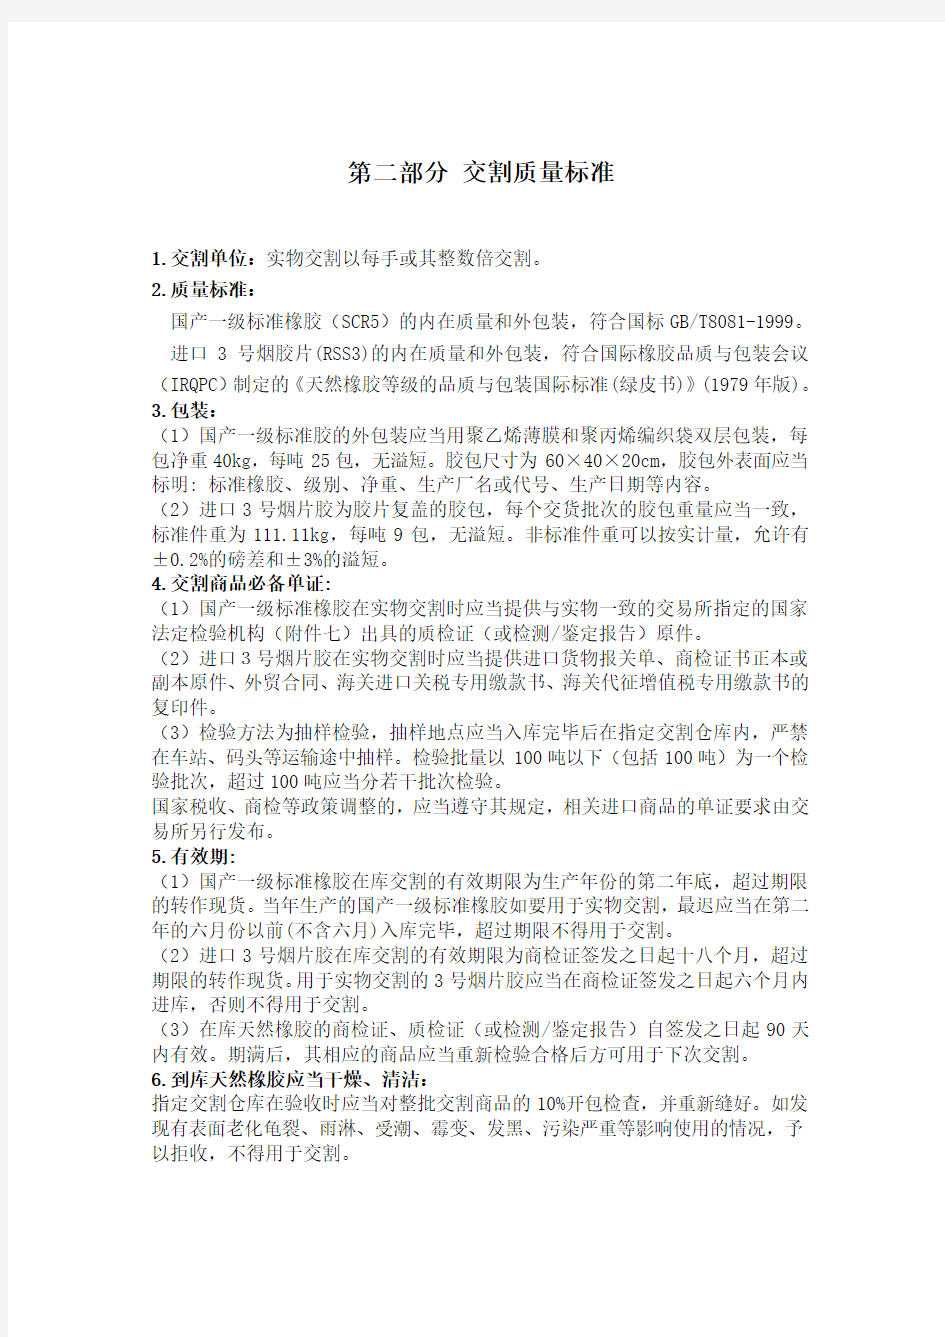 上海期货交易所天然橡胶期货合约资料整理